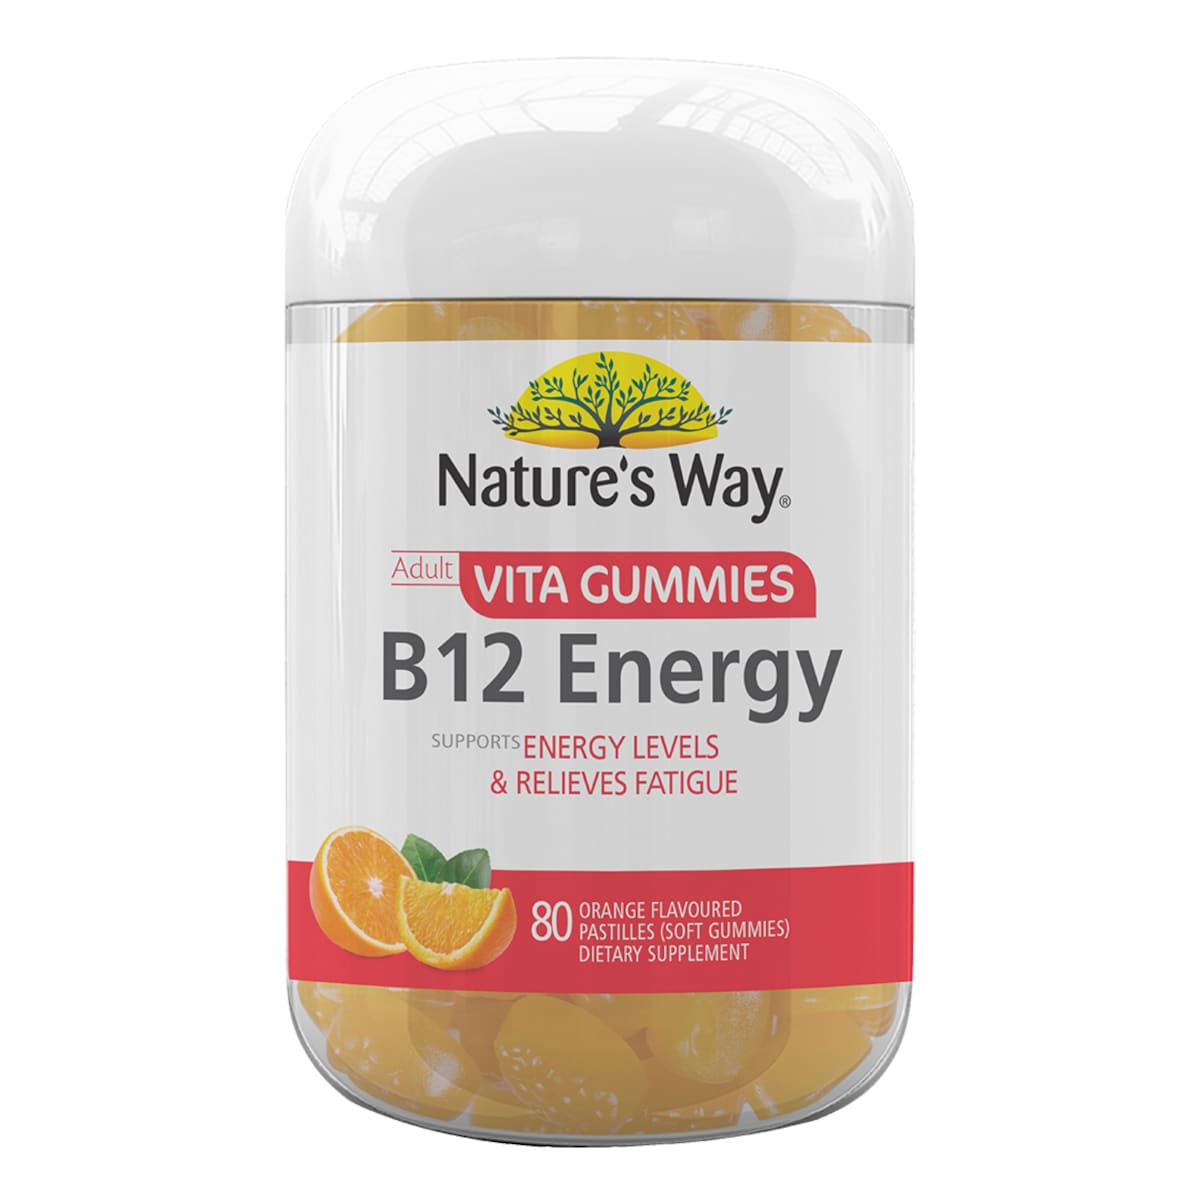 Natures Way Adult Vita Gummies B12 Energy 80 Pack Australia